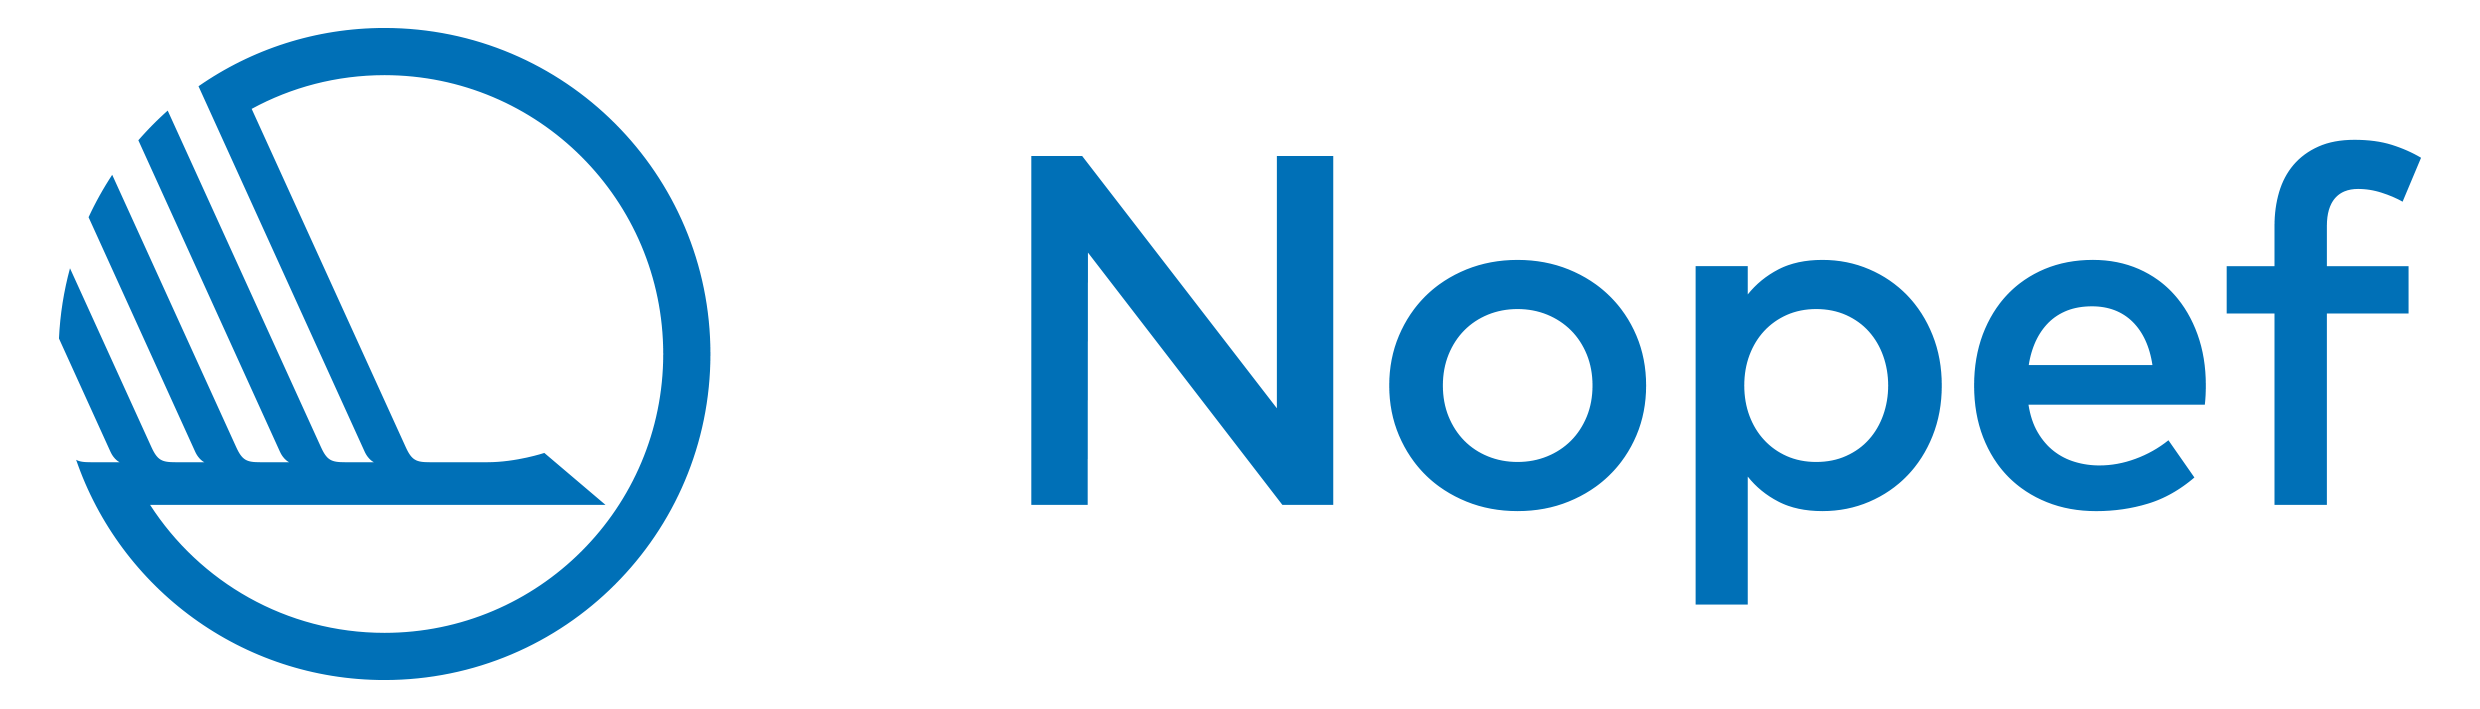 Nopef_logo2019_blue.png